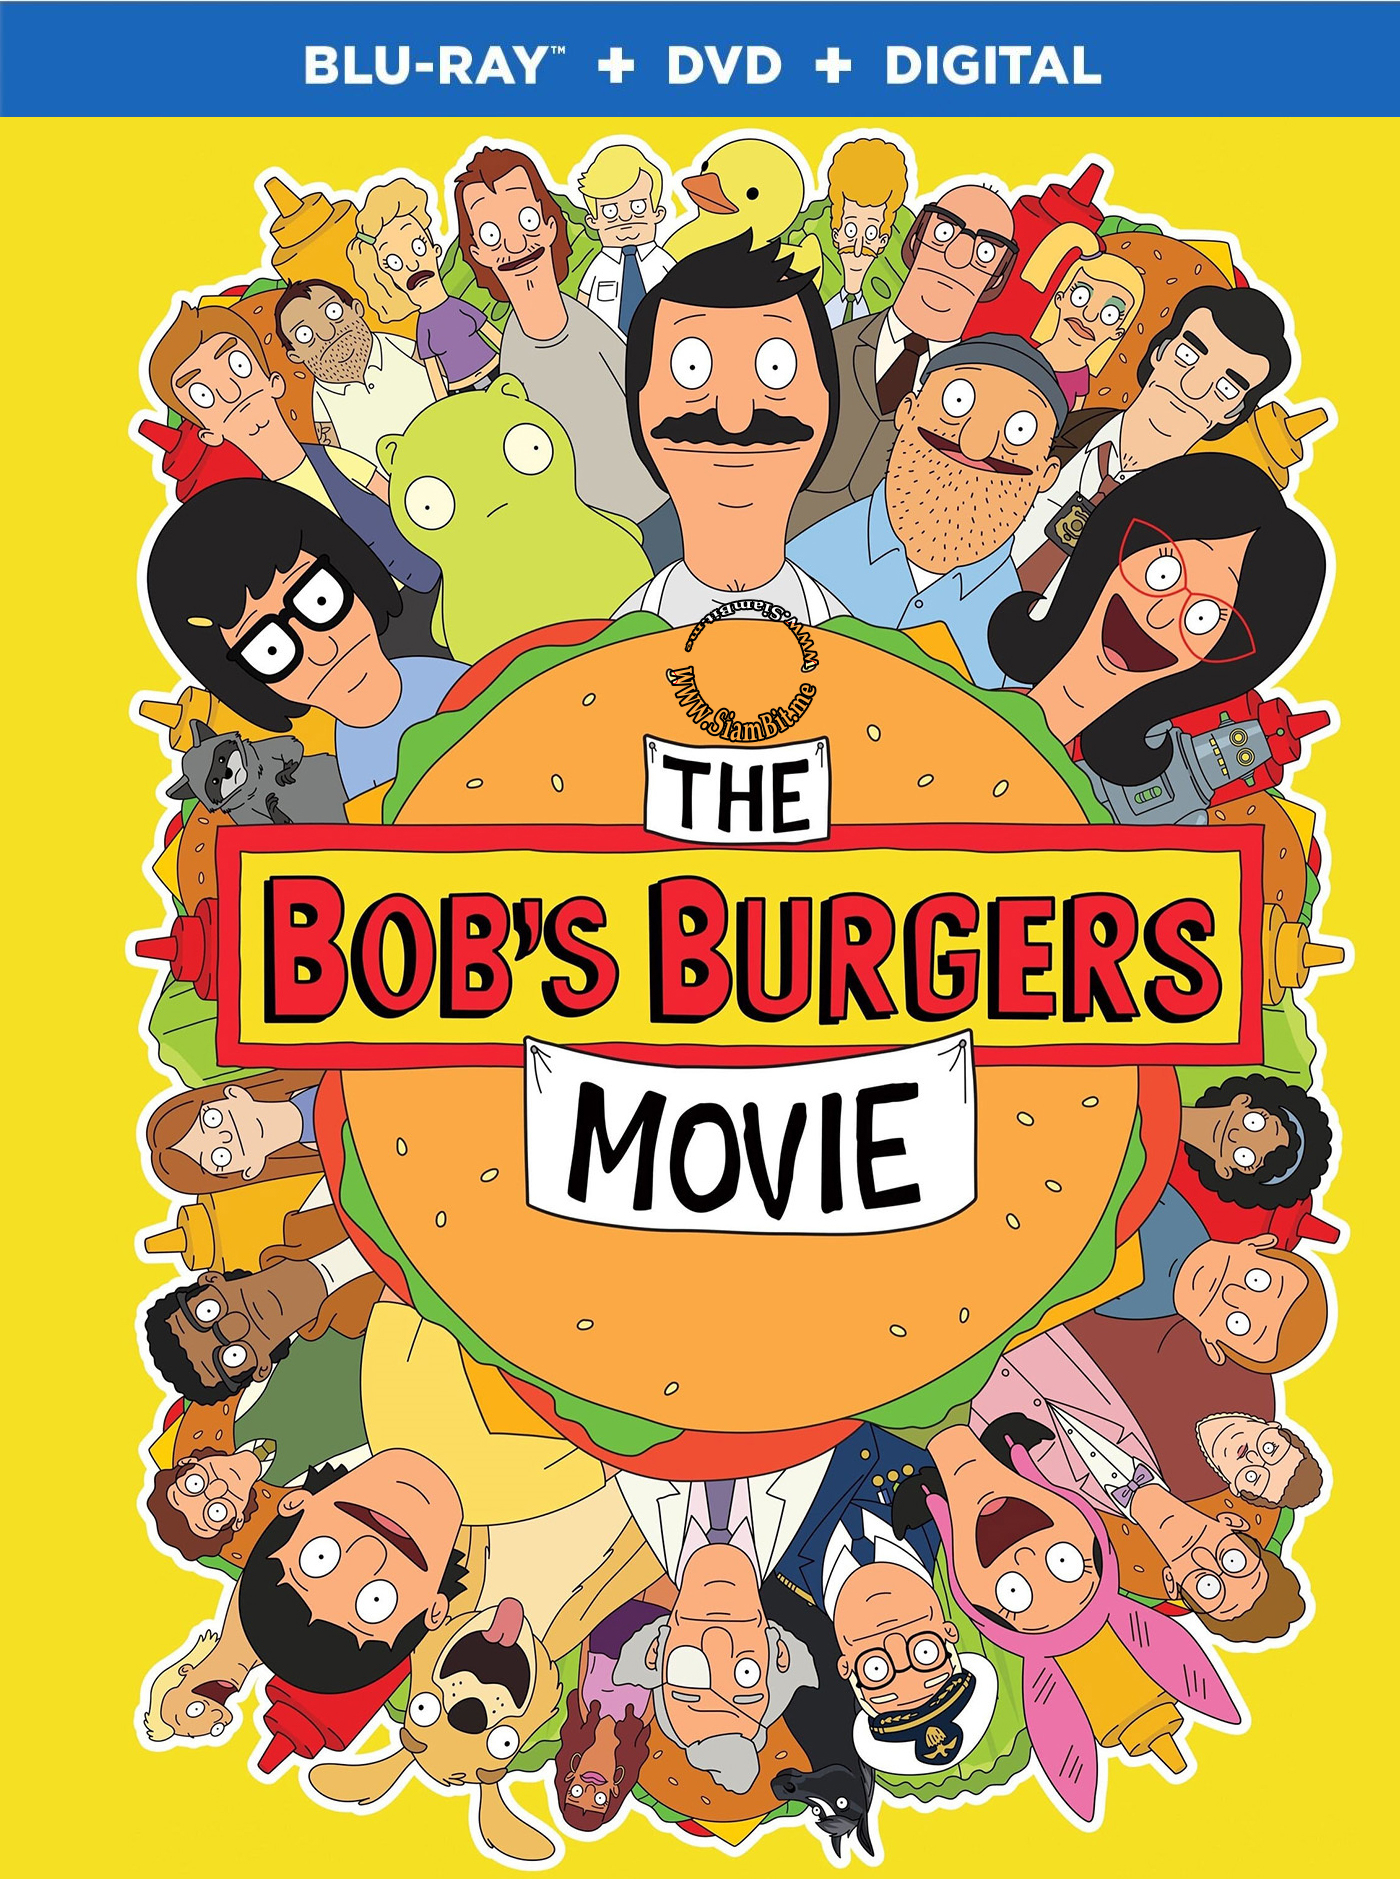 [ฝรั่ง]-ใหม่[* 1080p Super HQ ไฟล์เล็กคุณภาพสูง! *] The Bob's Burgers Movie (2022) :  เดอะ บ๊อบส์ เบอร์เกอร์ส มูฟวี่ [เสียงอังกฤษ DTS-5.1 + พากย์ไทย 5.1 Master แท้.] [บรรยาย: ไทย-อังกฤษ Master + ซับ PGS คมชัด]